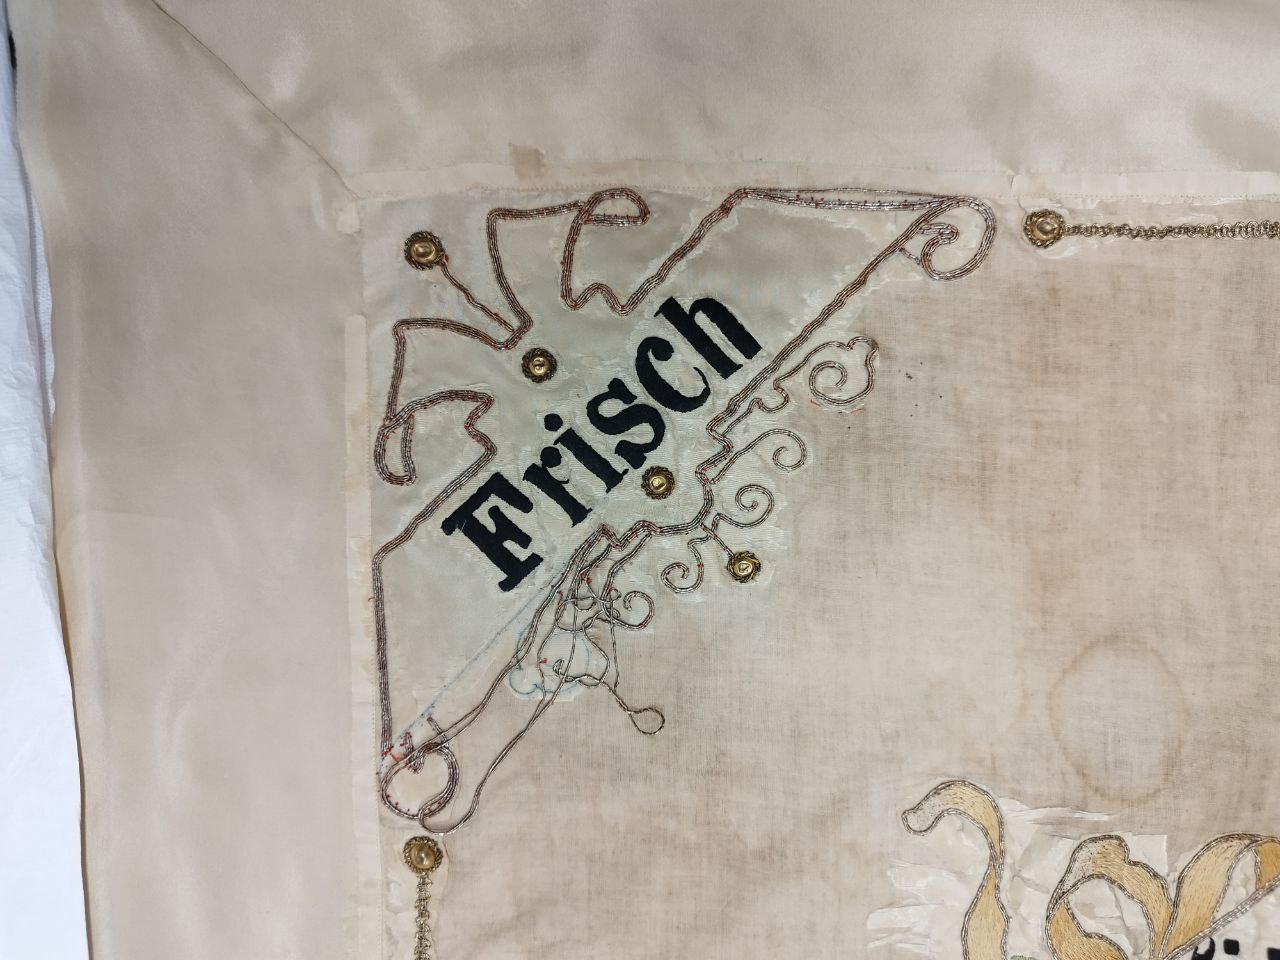 Detailbild Frisch mit teilweise wieder angenähtem Metalllahn